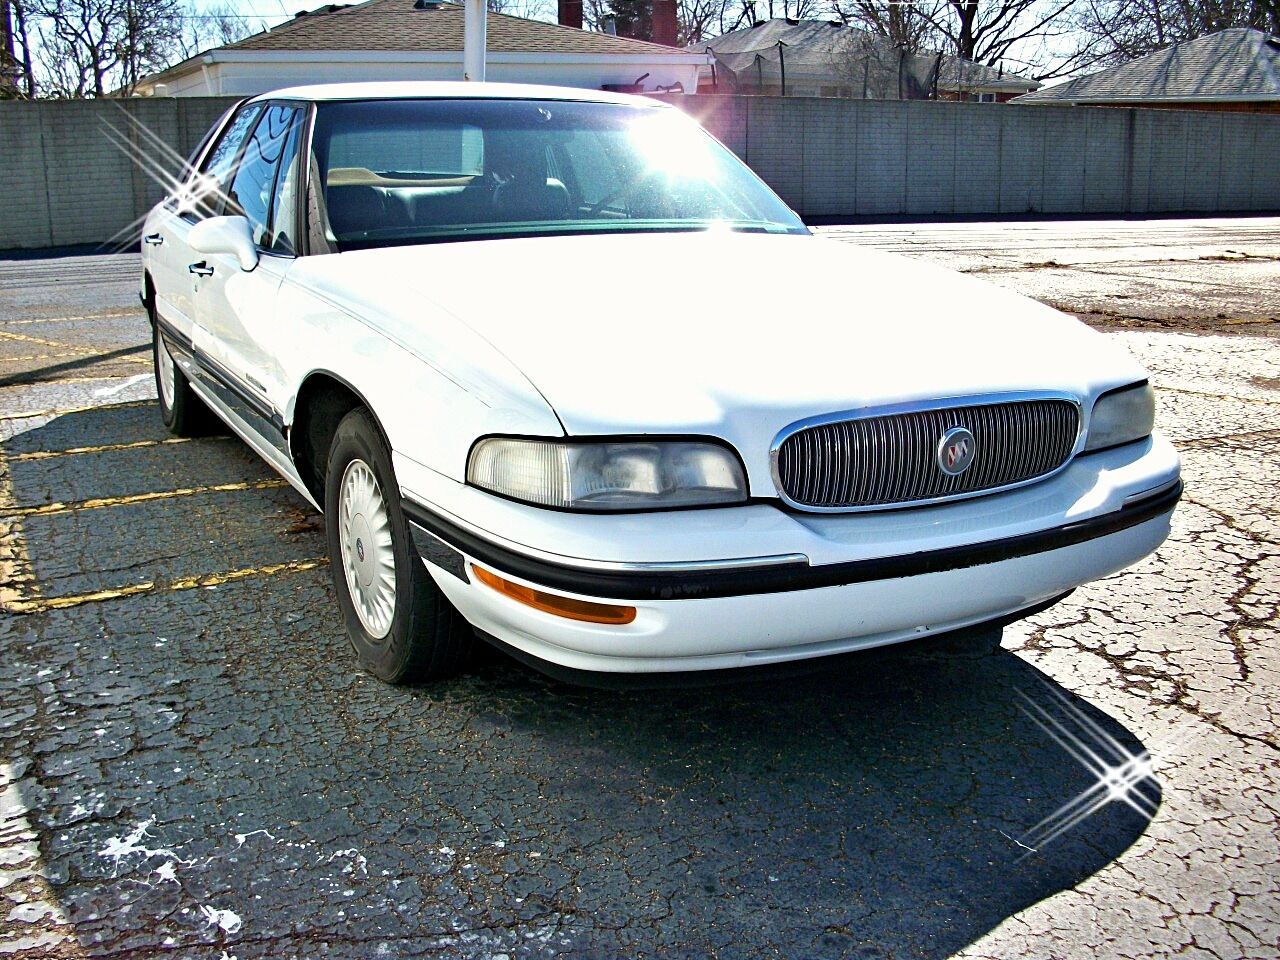 1998 Buick LeSabre For Sale - Carsforsale.com®